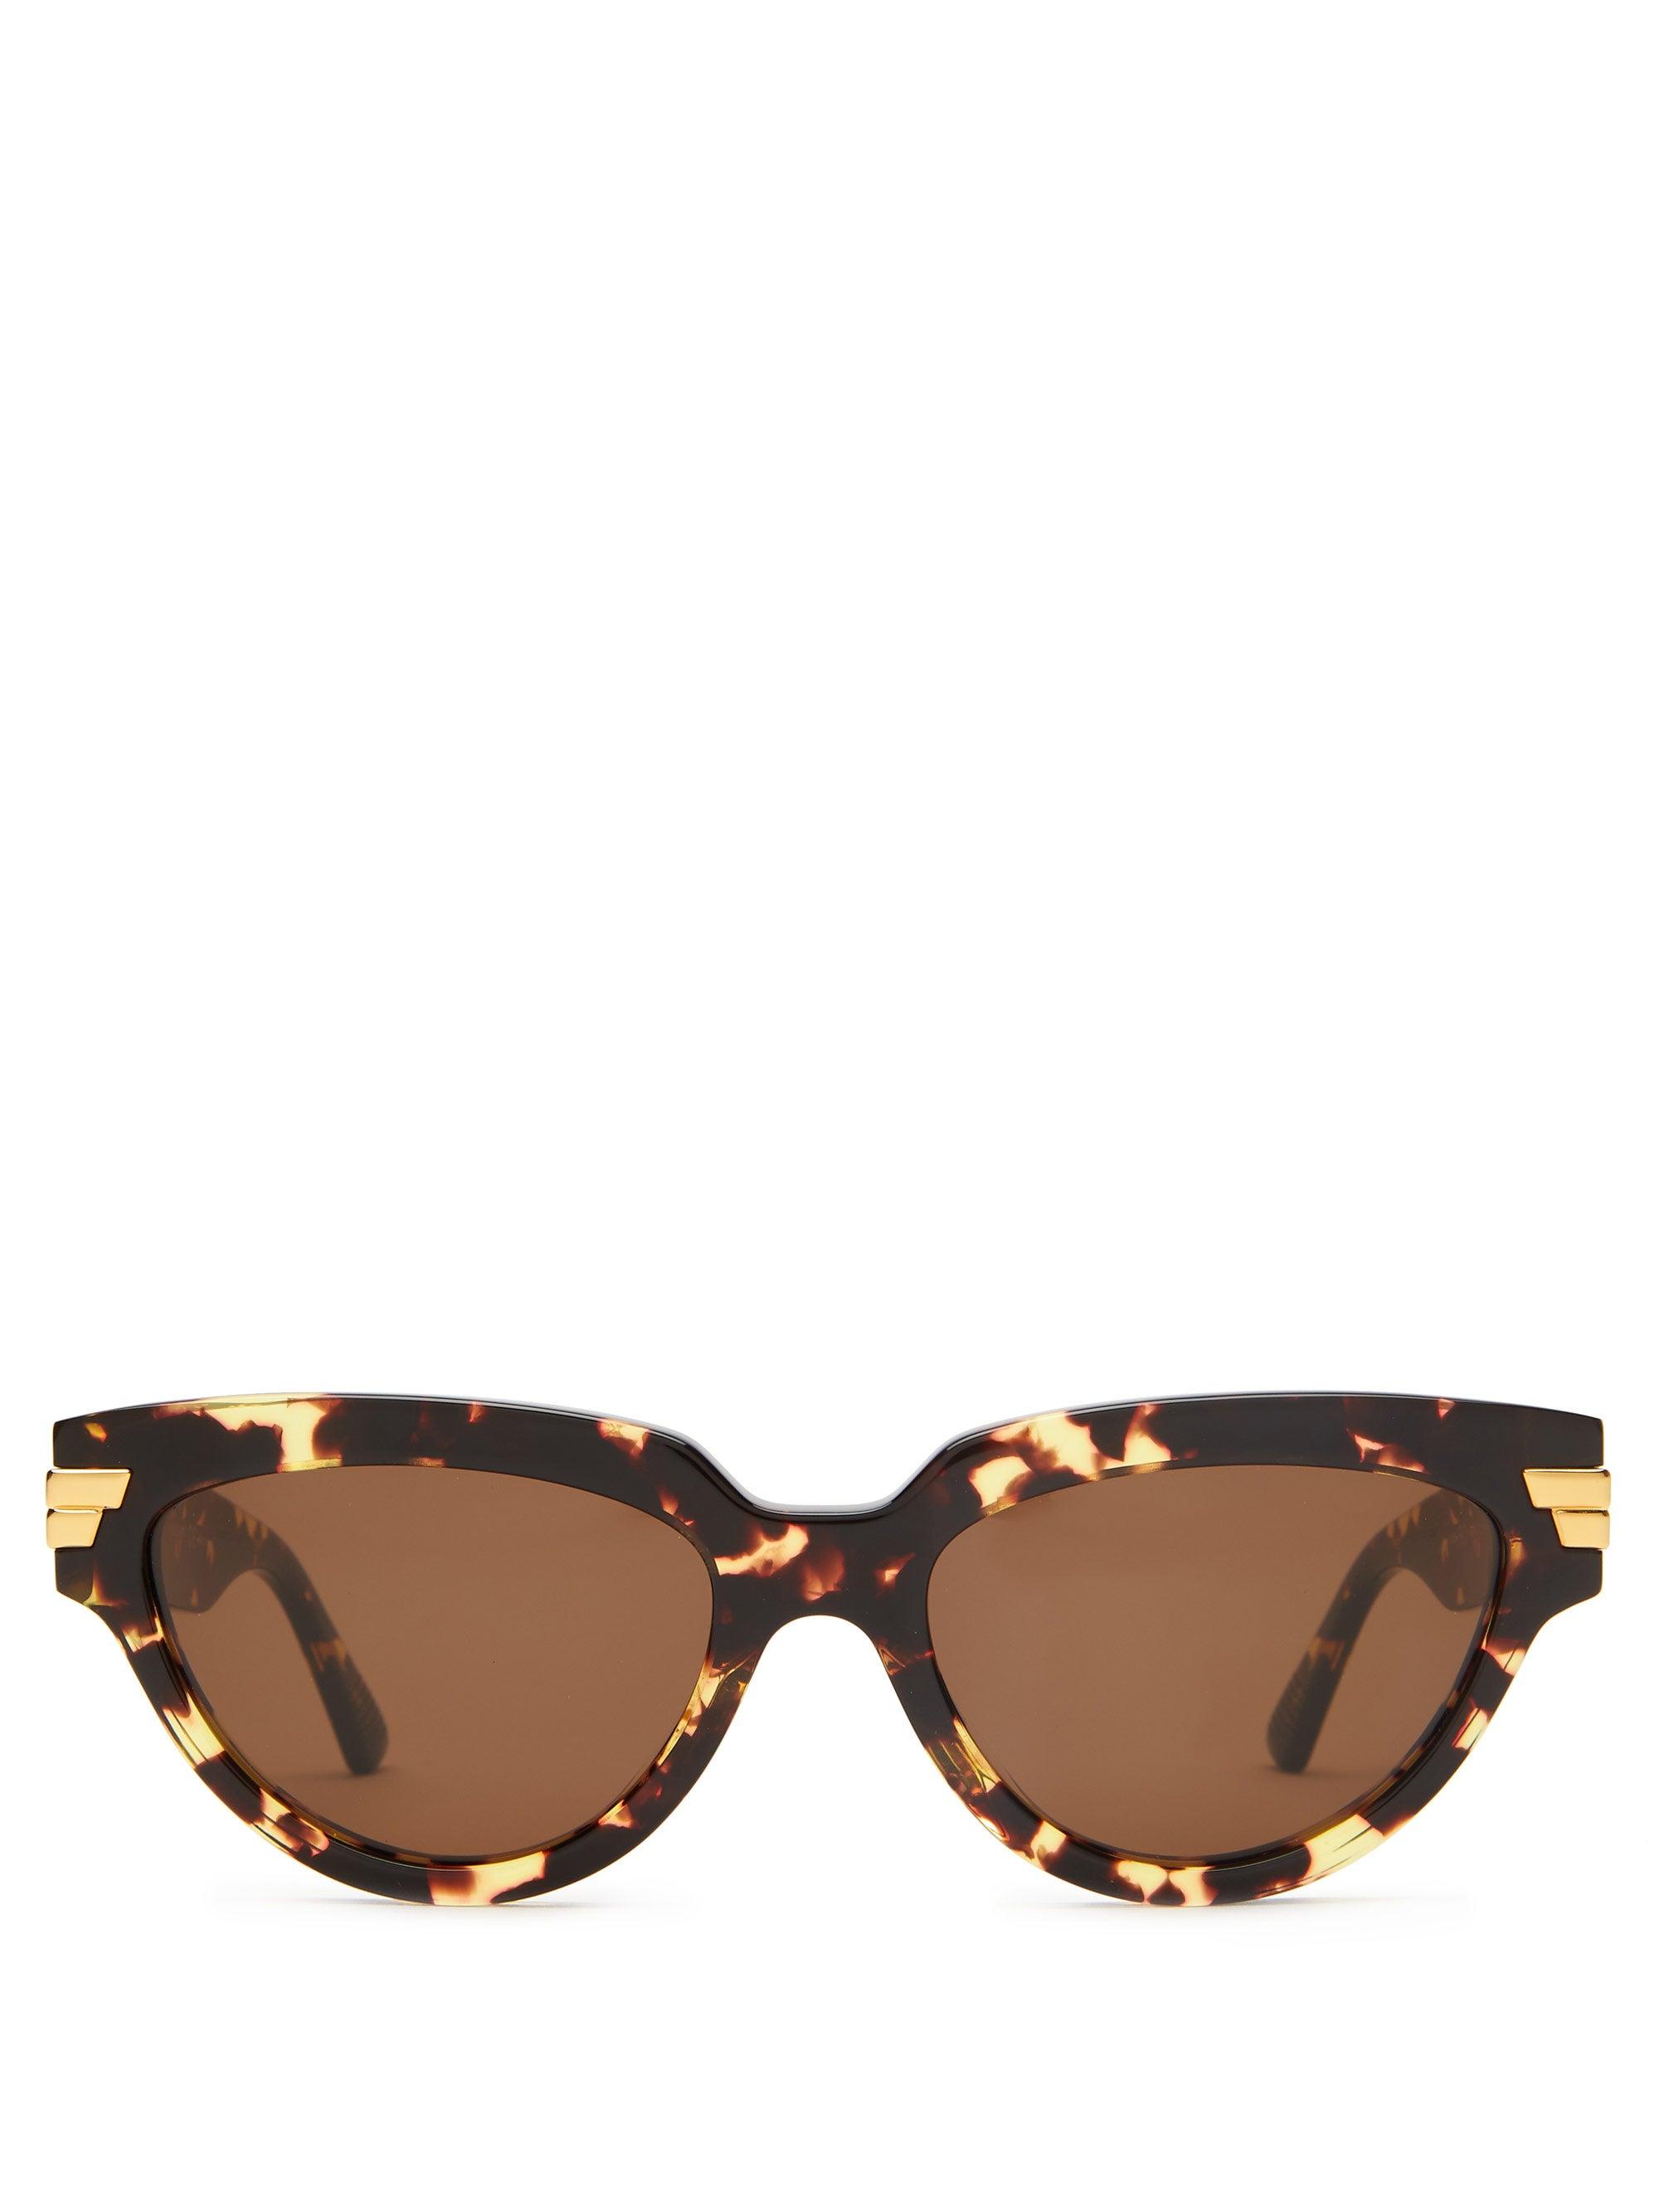 Bottega Veneta Cat-eye Tortoiseshell-acetate Sunglasses in Brown - Lyst